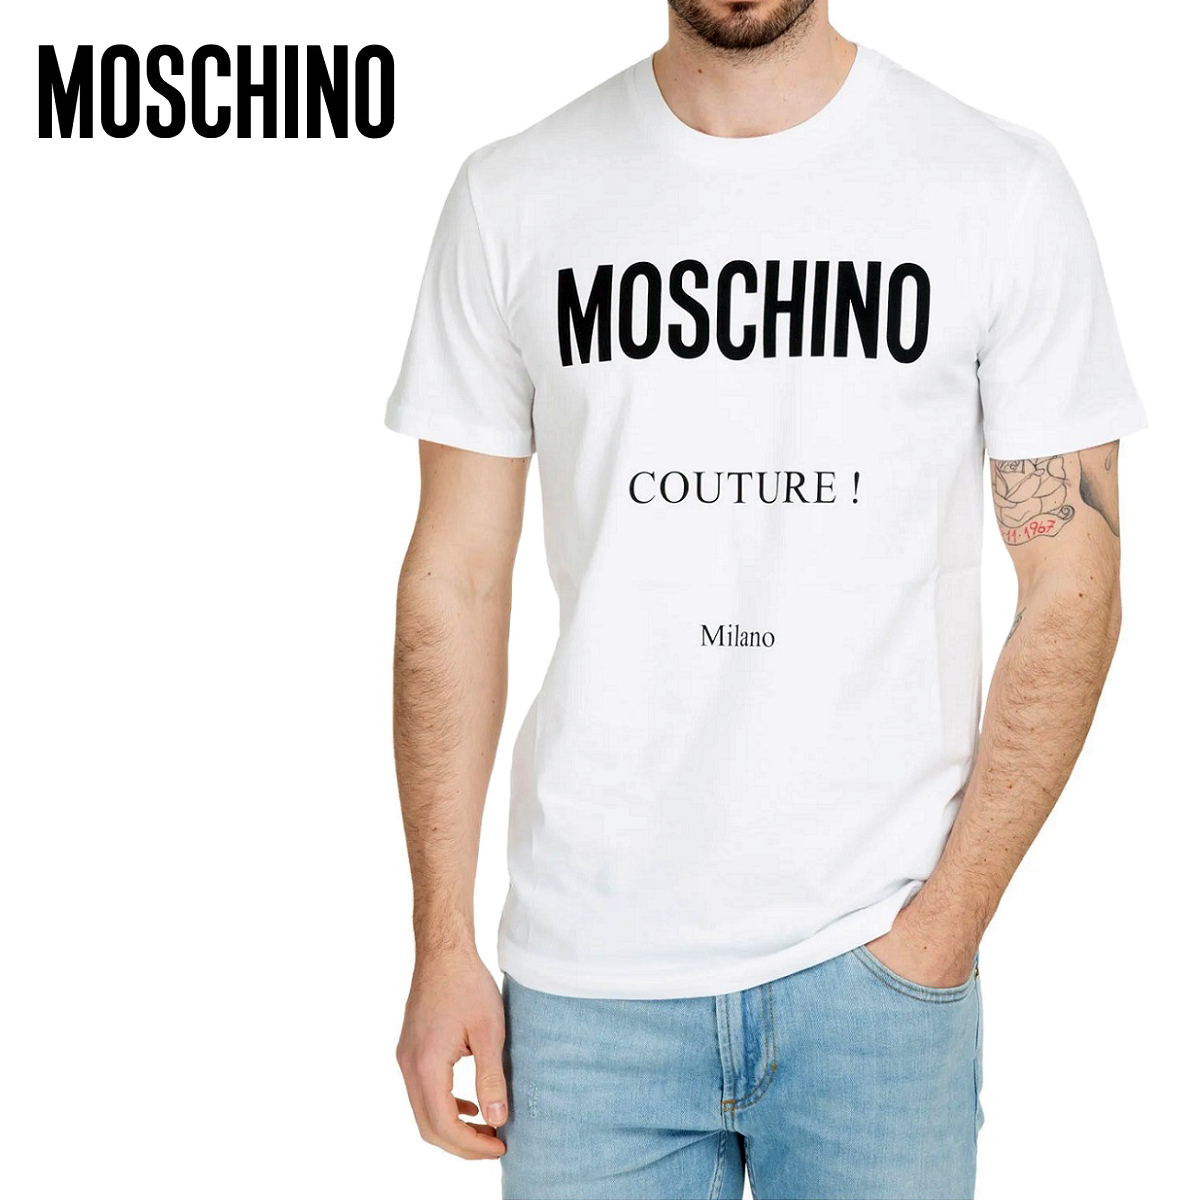 送料無料 4 MOSCHINO モスキーノ A0707 2041 ホワイト Tシャツ カットソー 半袖 size 46